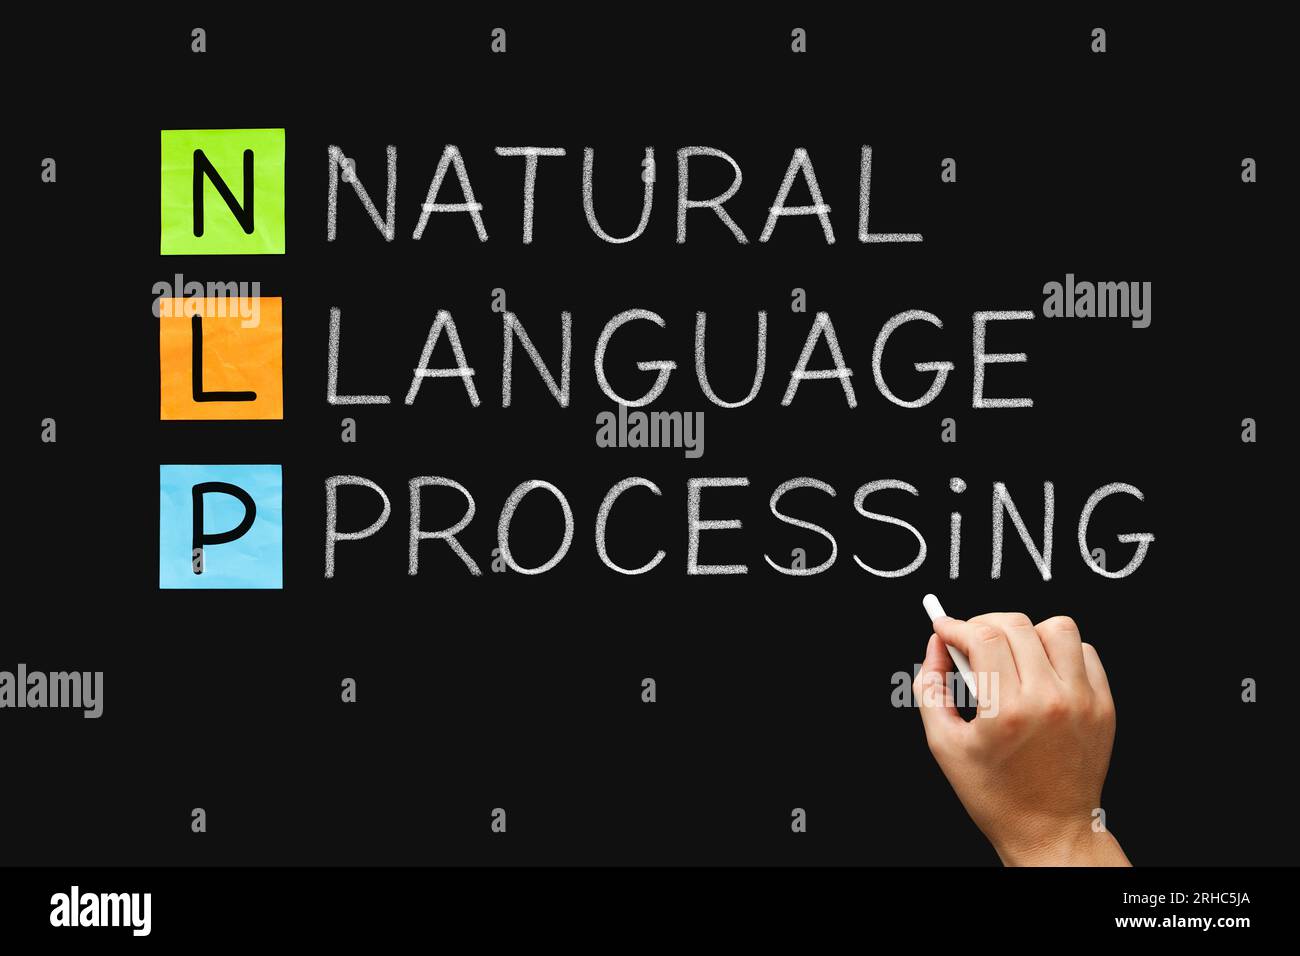 Concetto di scrittura manuale sulla PNL - Natural Language Processing, tecnologia di apprendimento automatico dell'intelligenza artificiale dell'intelligenza artificiale che offre ai computer la possibilità di farlo Foto Stock